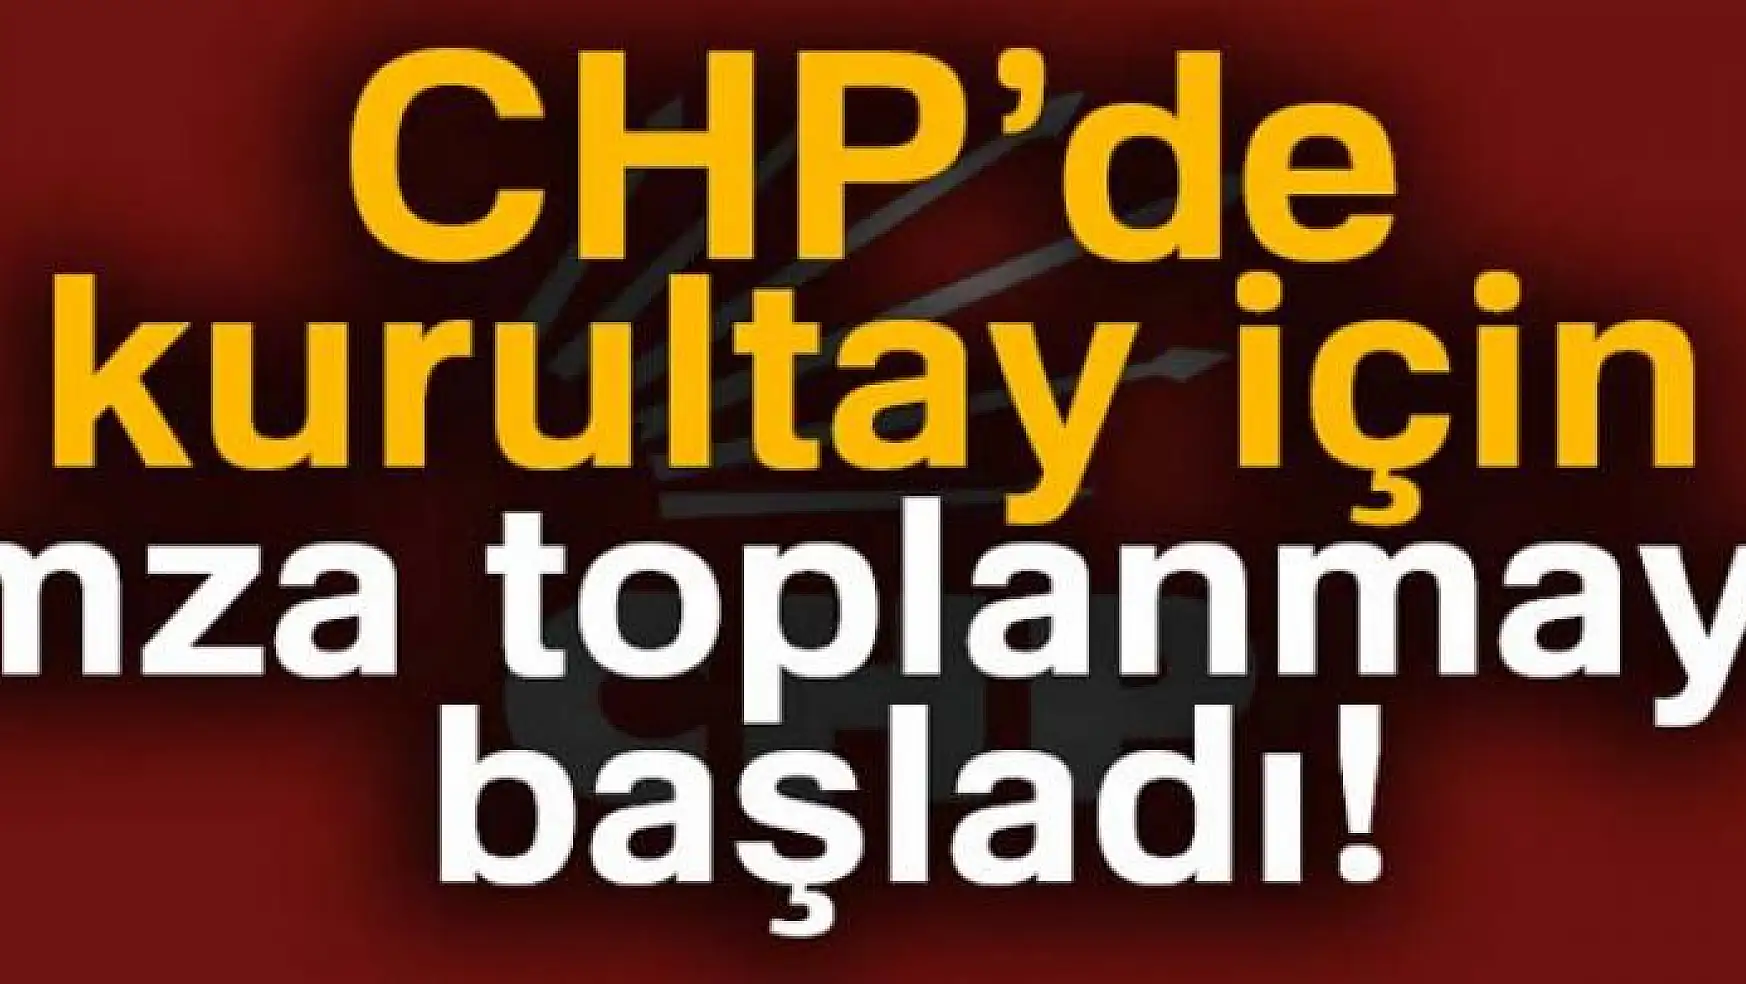 CHP'de kurultay için imza toplanmaya başladı